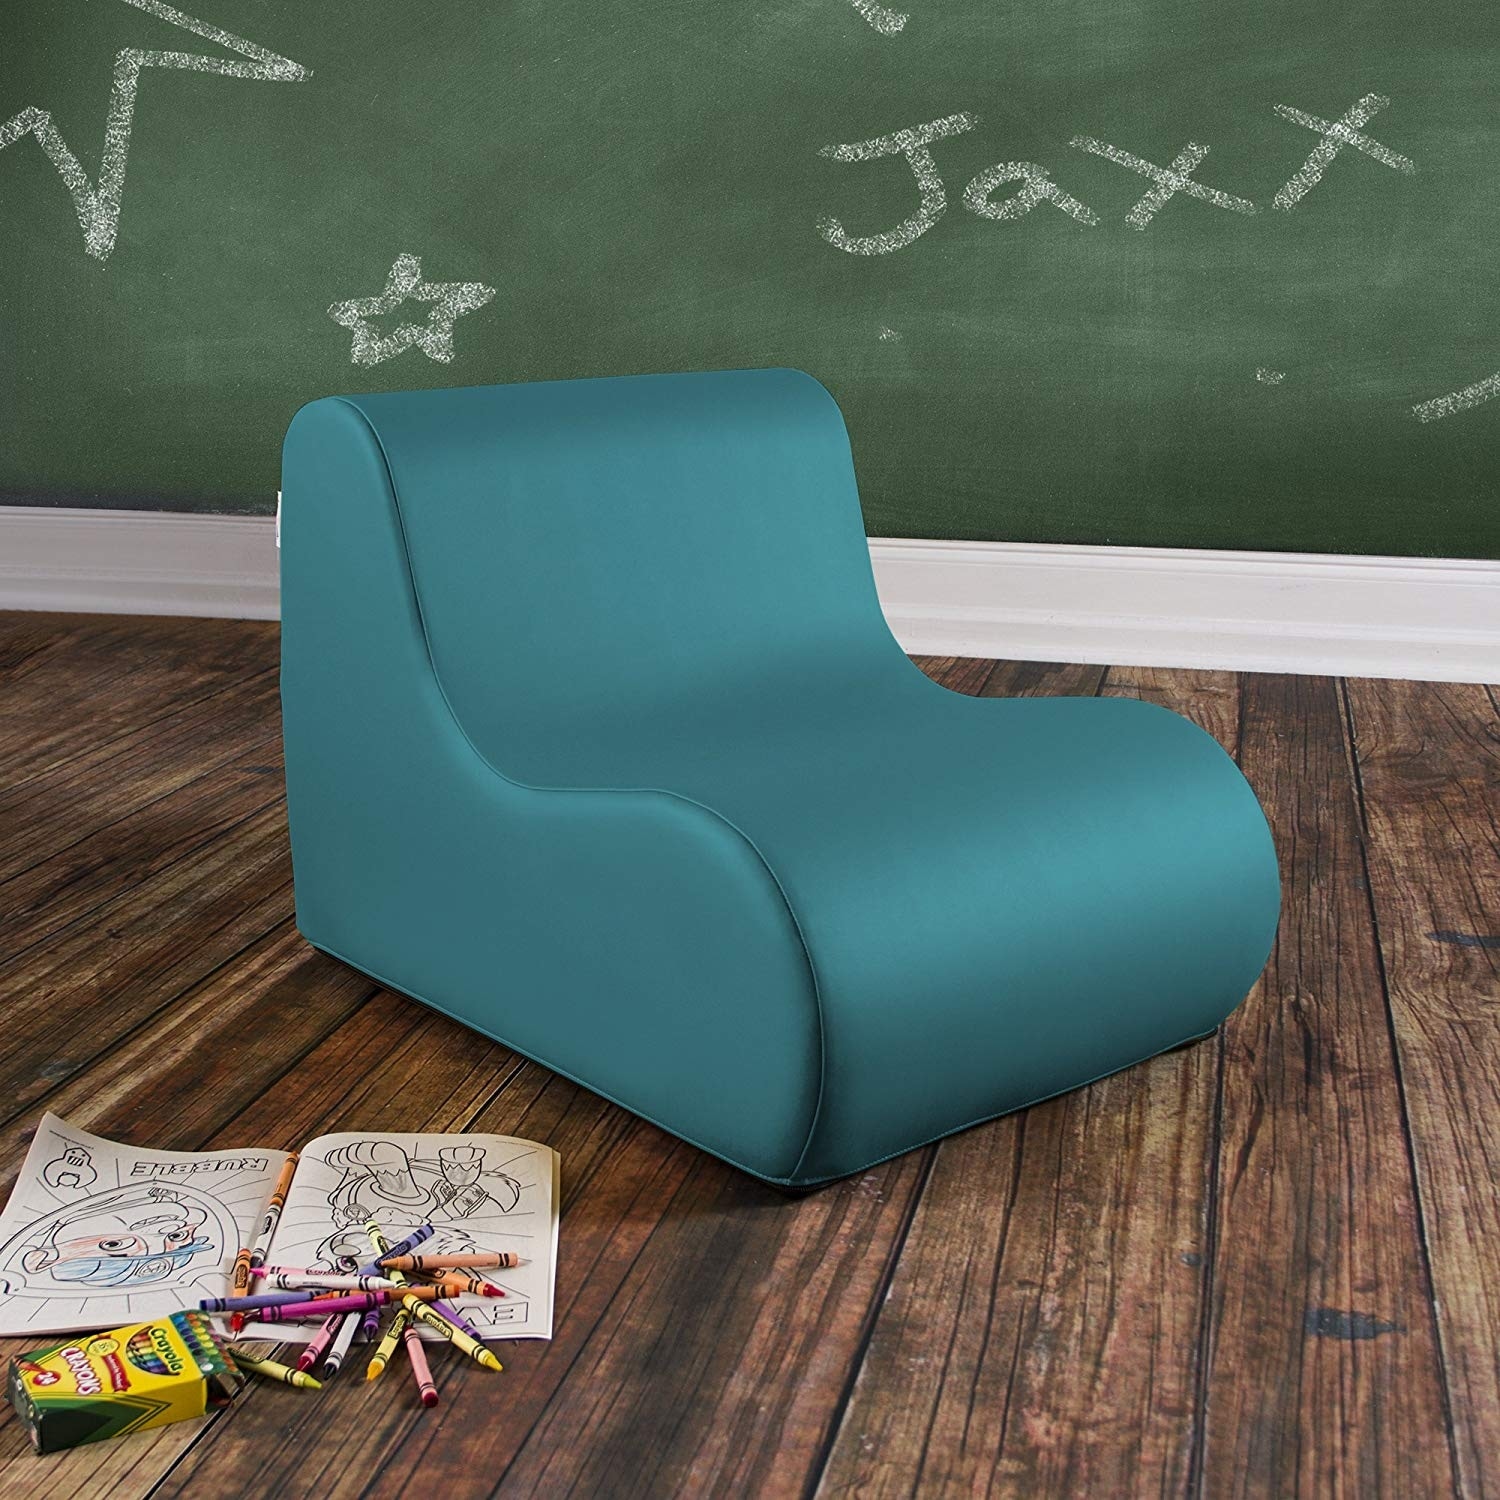 All Jaxx Midtown Jr Classroom Soft Foam Chair Options